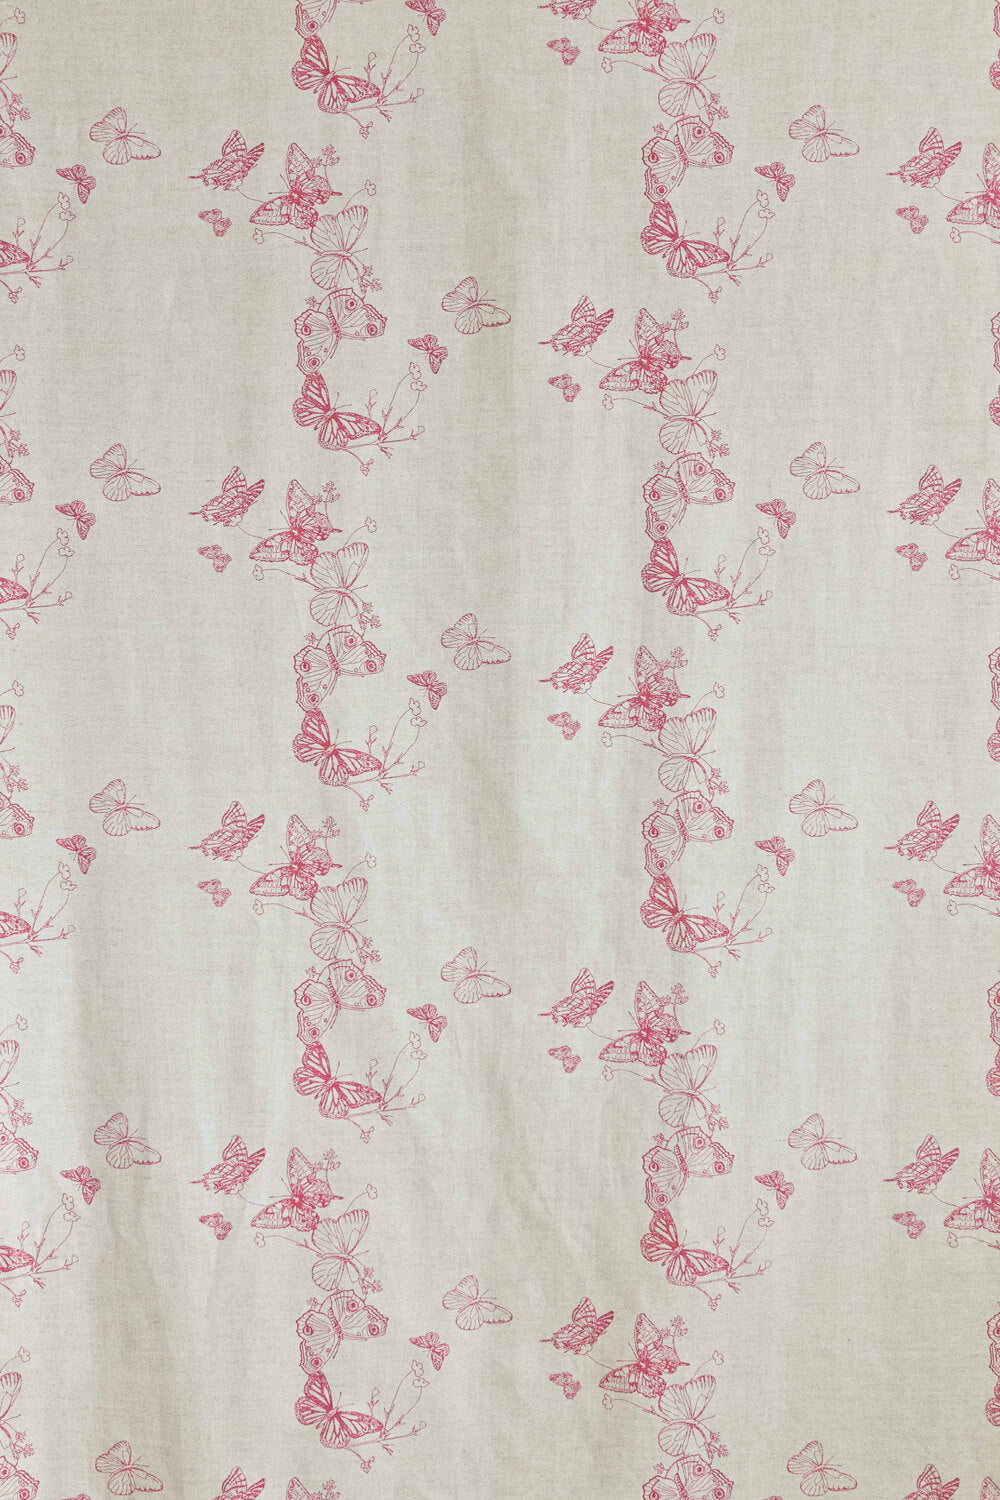 Butterflies - Raspberry Fabric